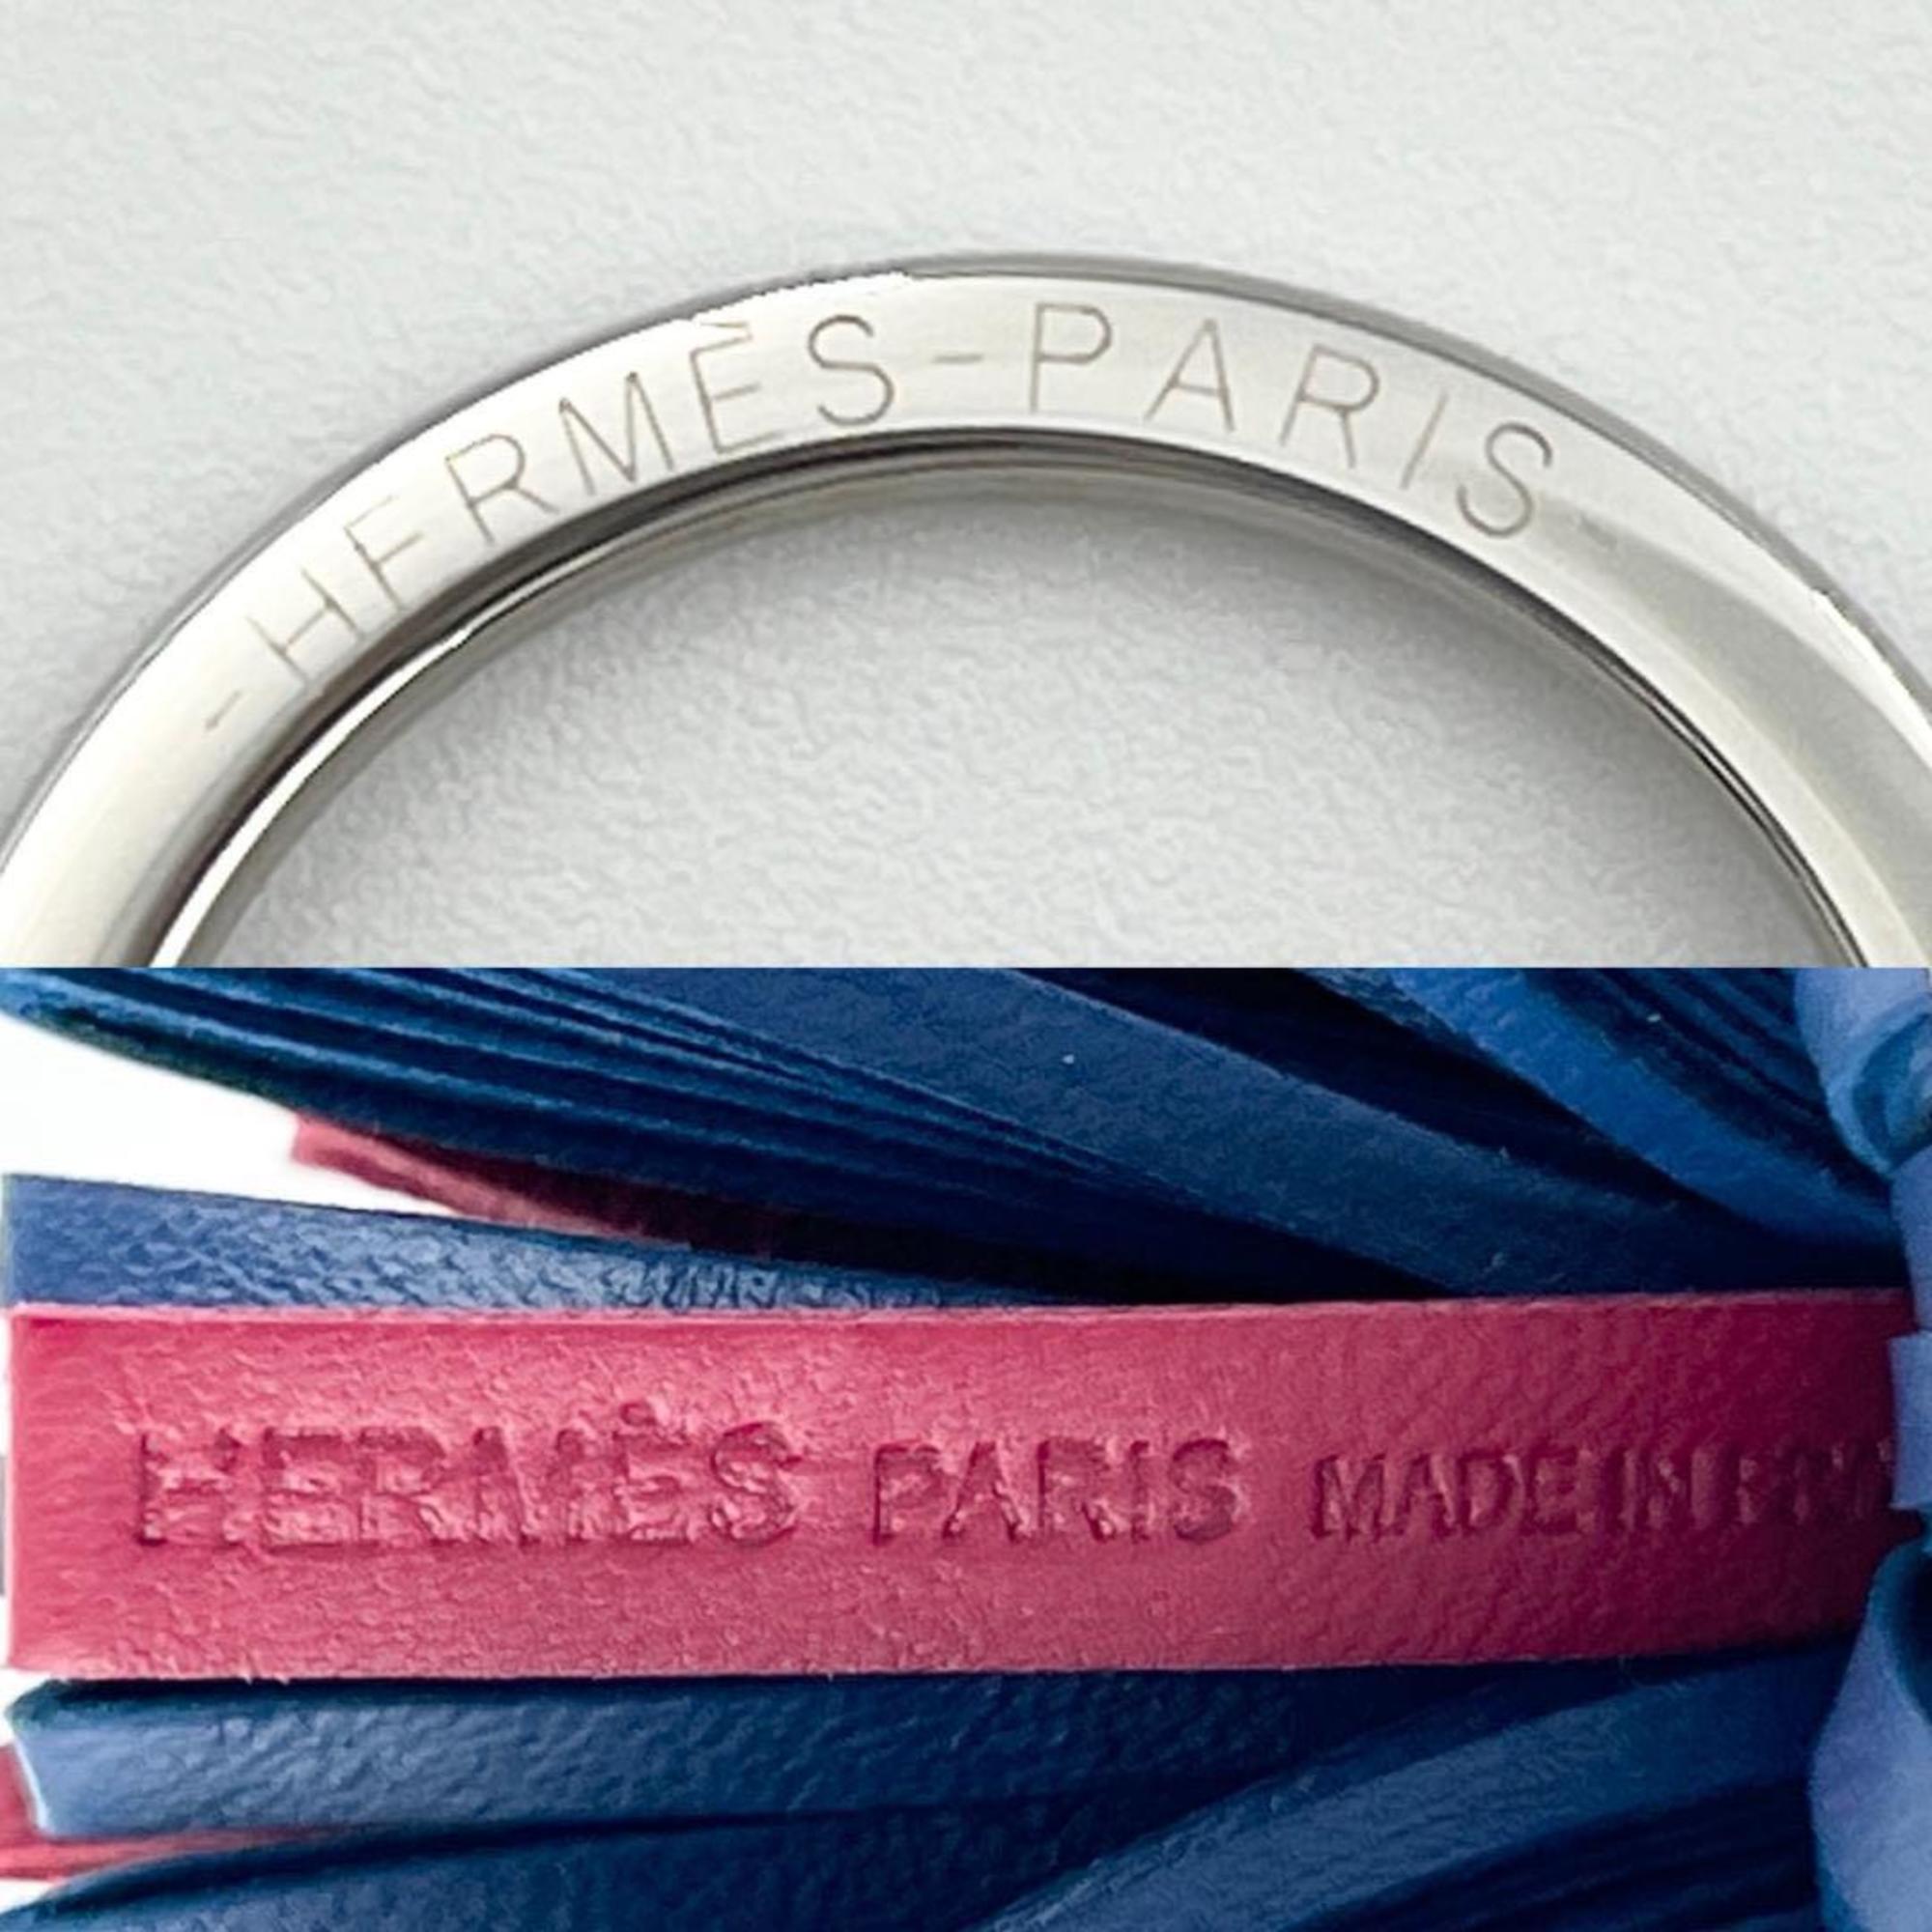 Hermes HERMES Women's Key Holder Ring Charm Leather Carmen